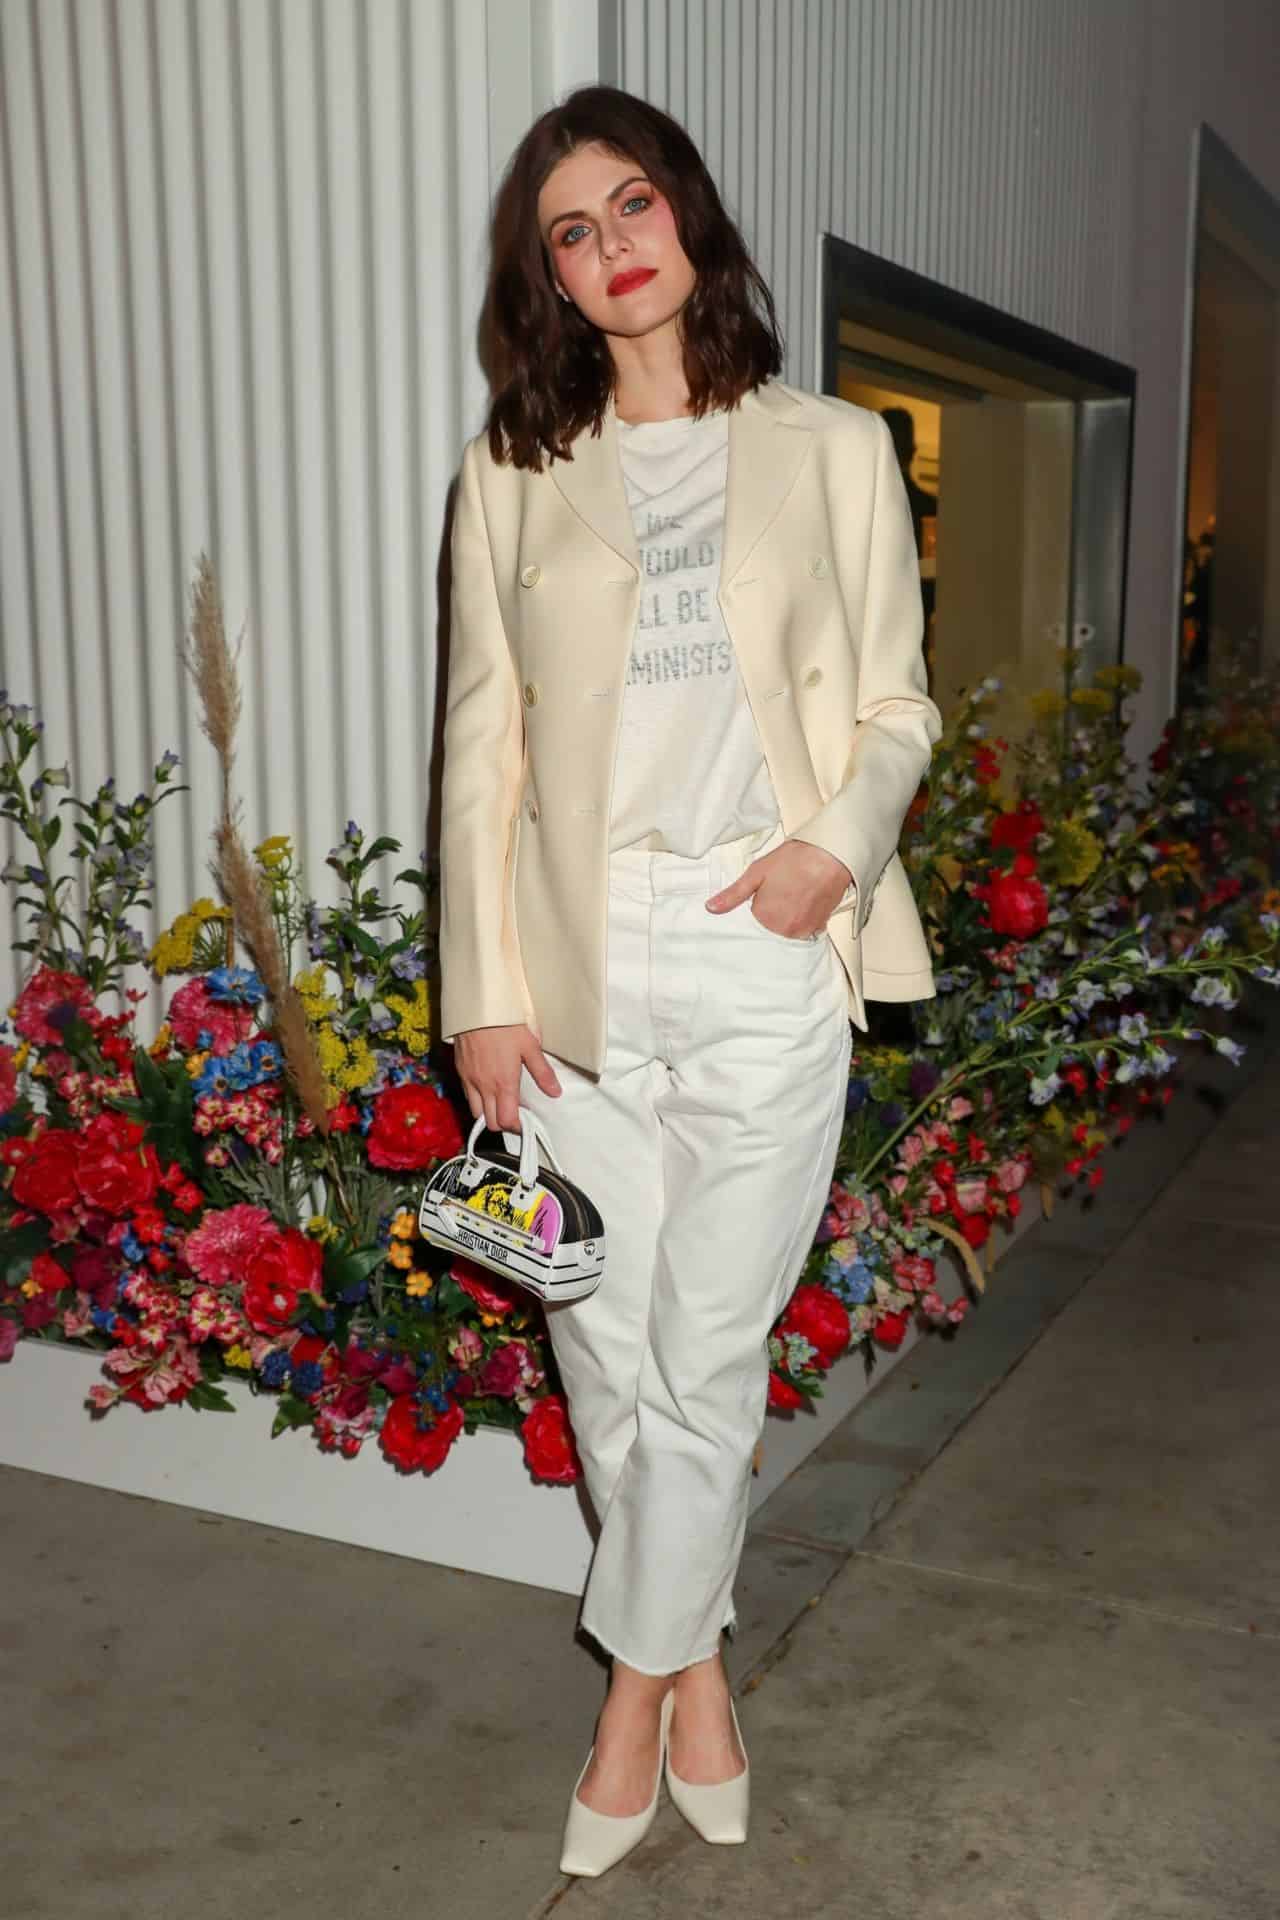 Alexandra Daddario Wowed at the Miss Dior Millefiori Garden Event in LA